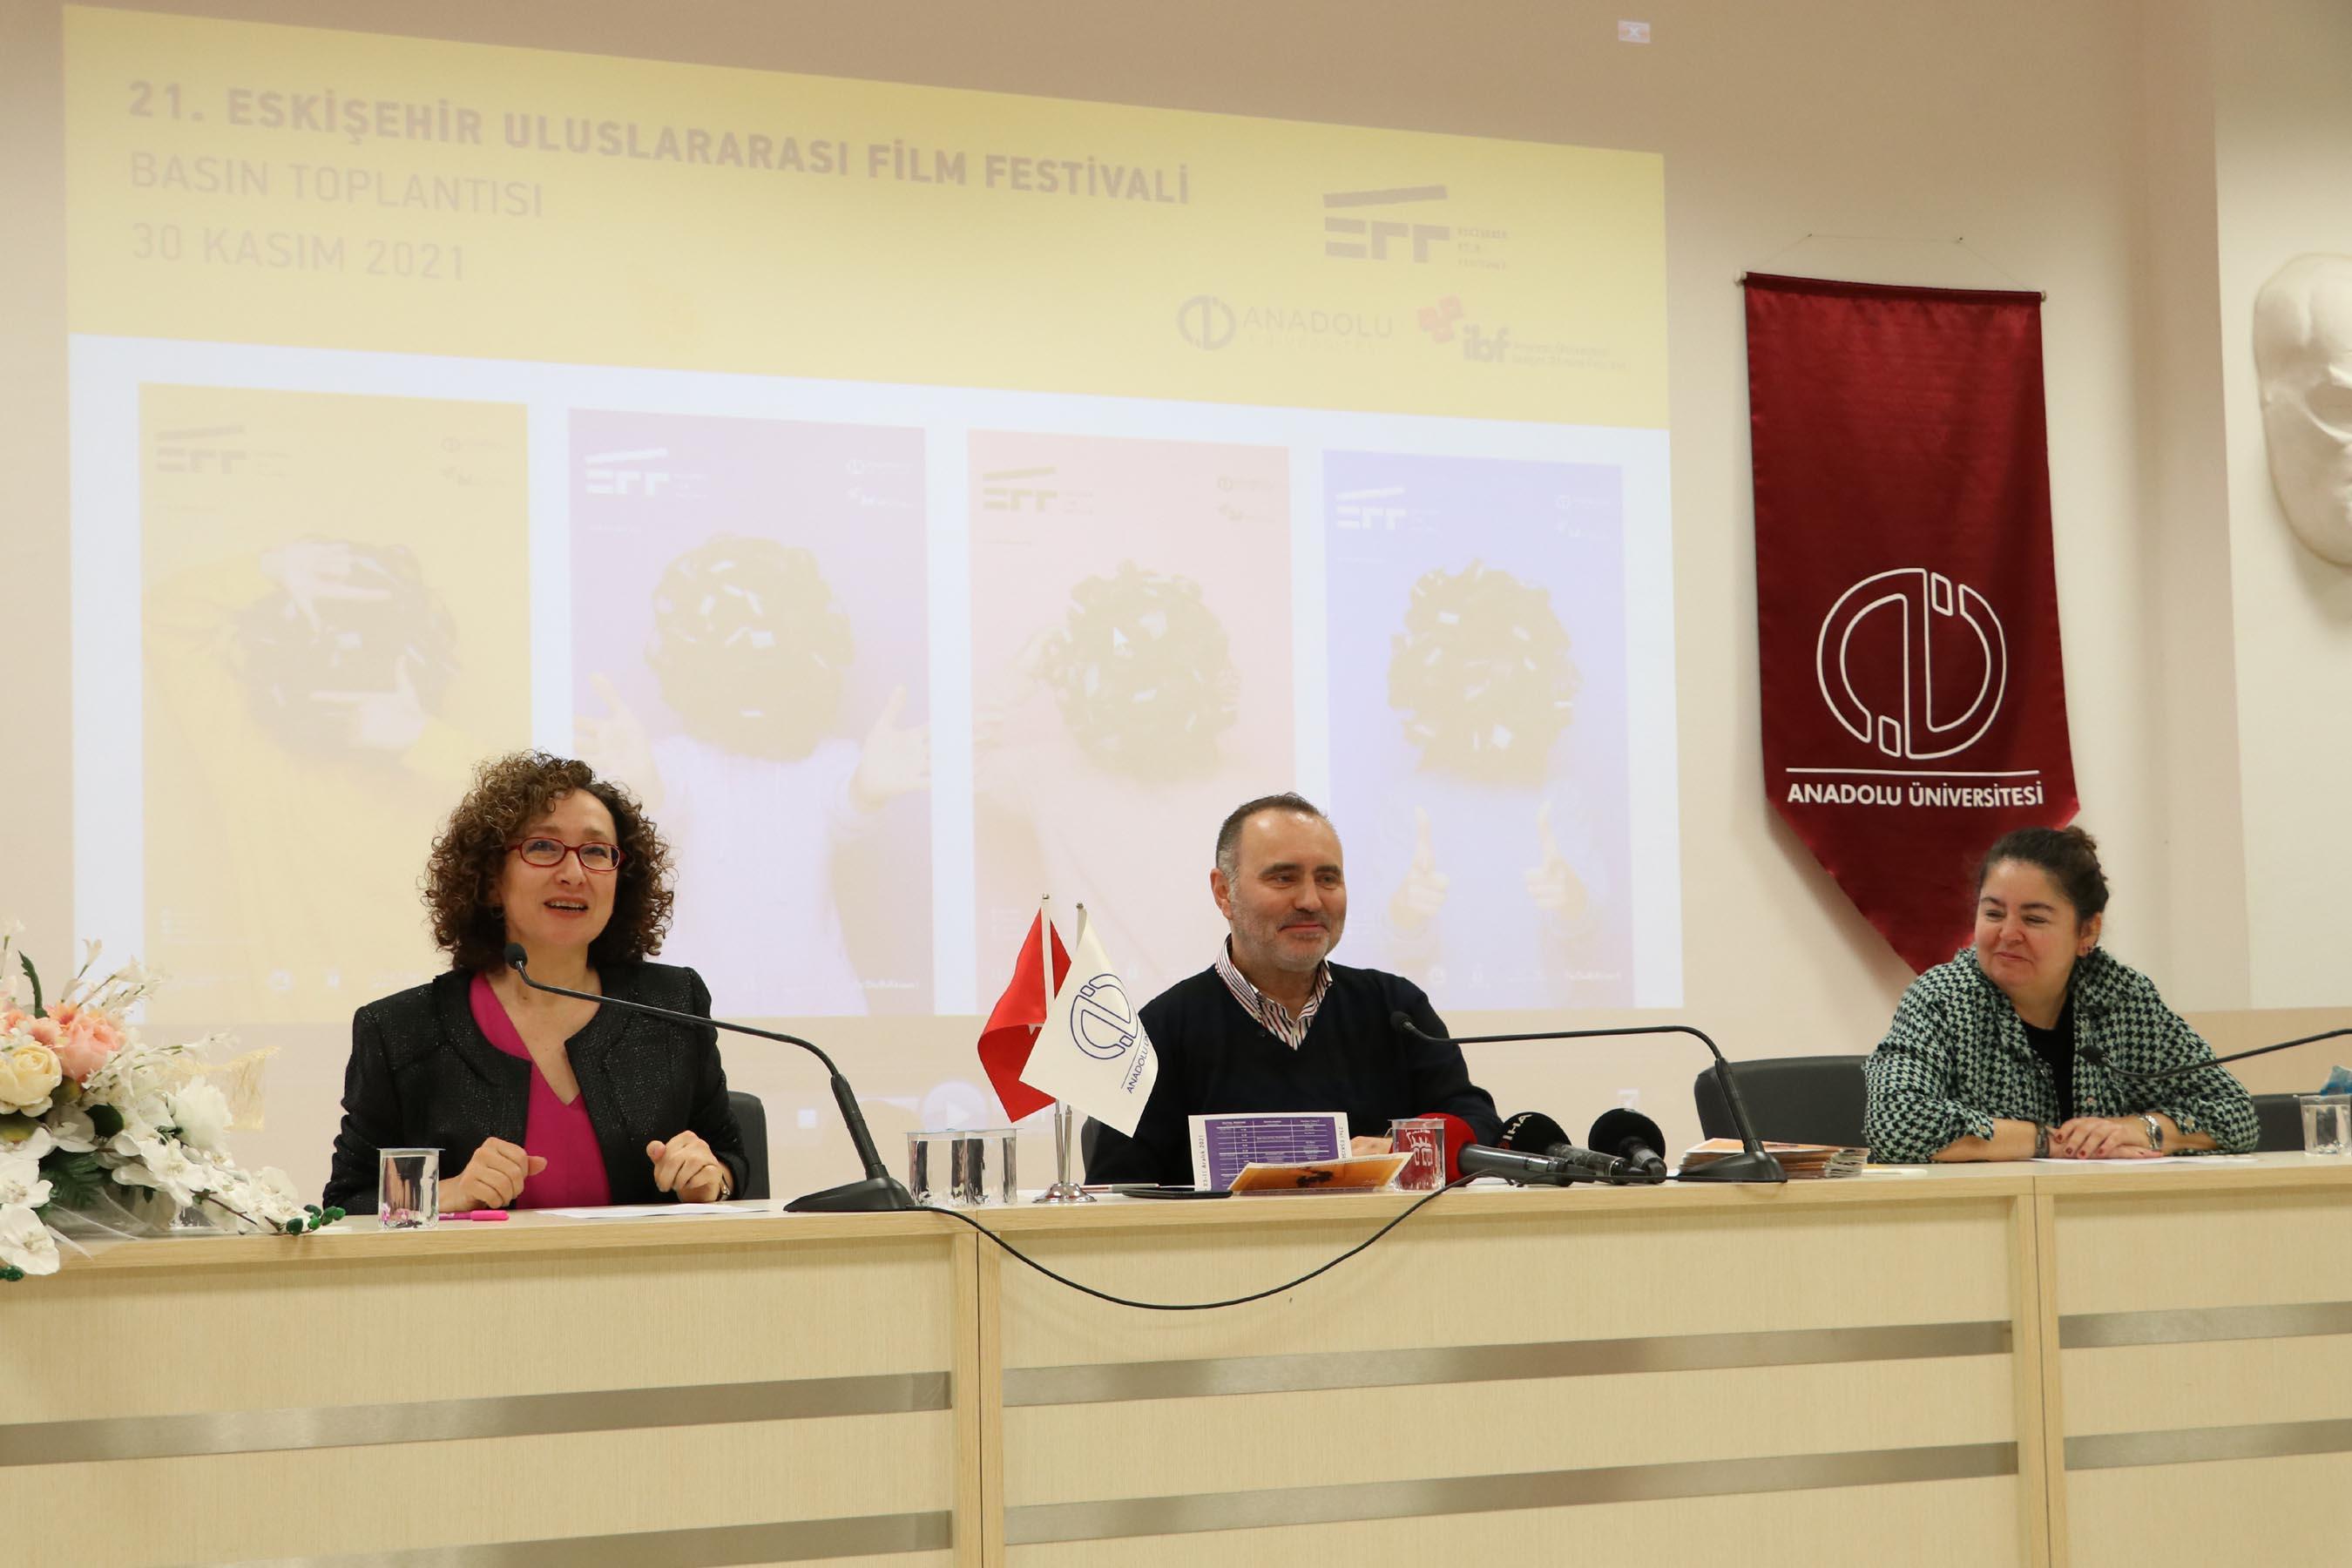 Eskişehir Film Festivalinin onur ödülleri Erden Kıral ile Nur Sürere verilecek